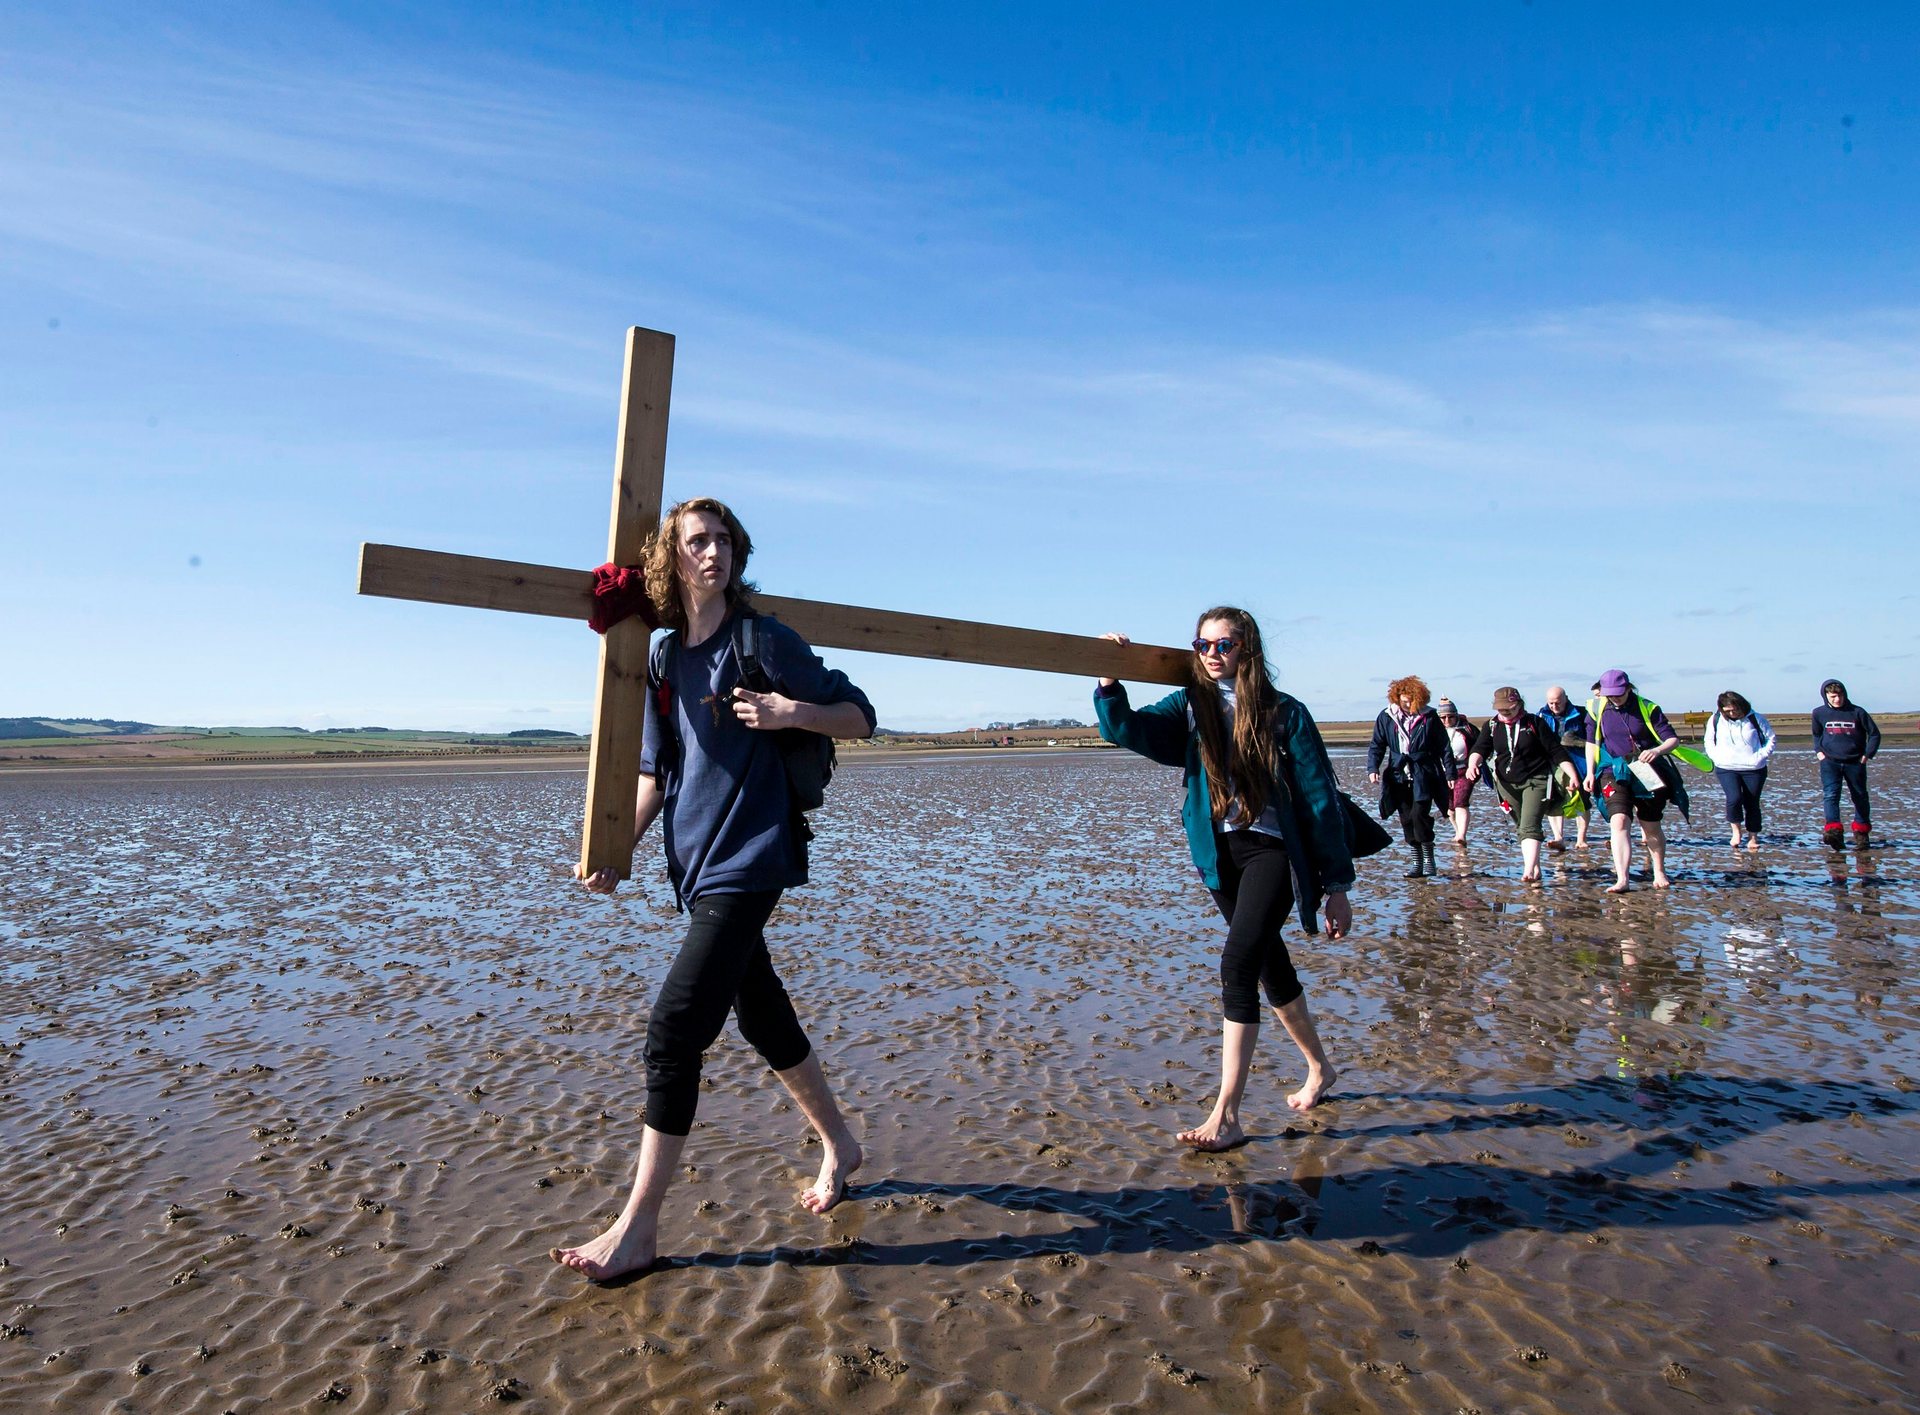 Беруик-ъпон-Туид, UK Повече от 35 години групи поклонници ходят заедно от различни места в северната част на Англия и Шотландия до свещения остров Линдисфарн. Снимка: Дани Лоусън / PA